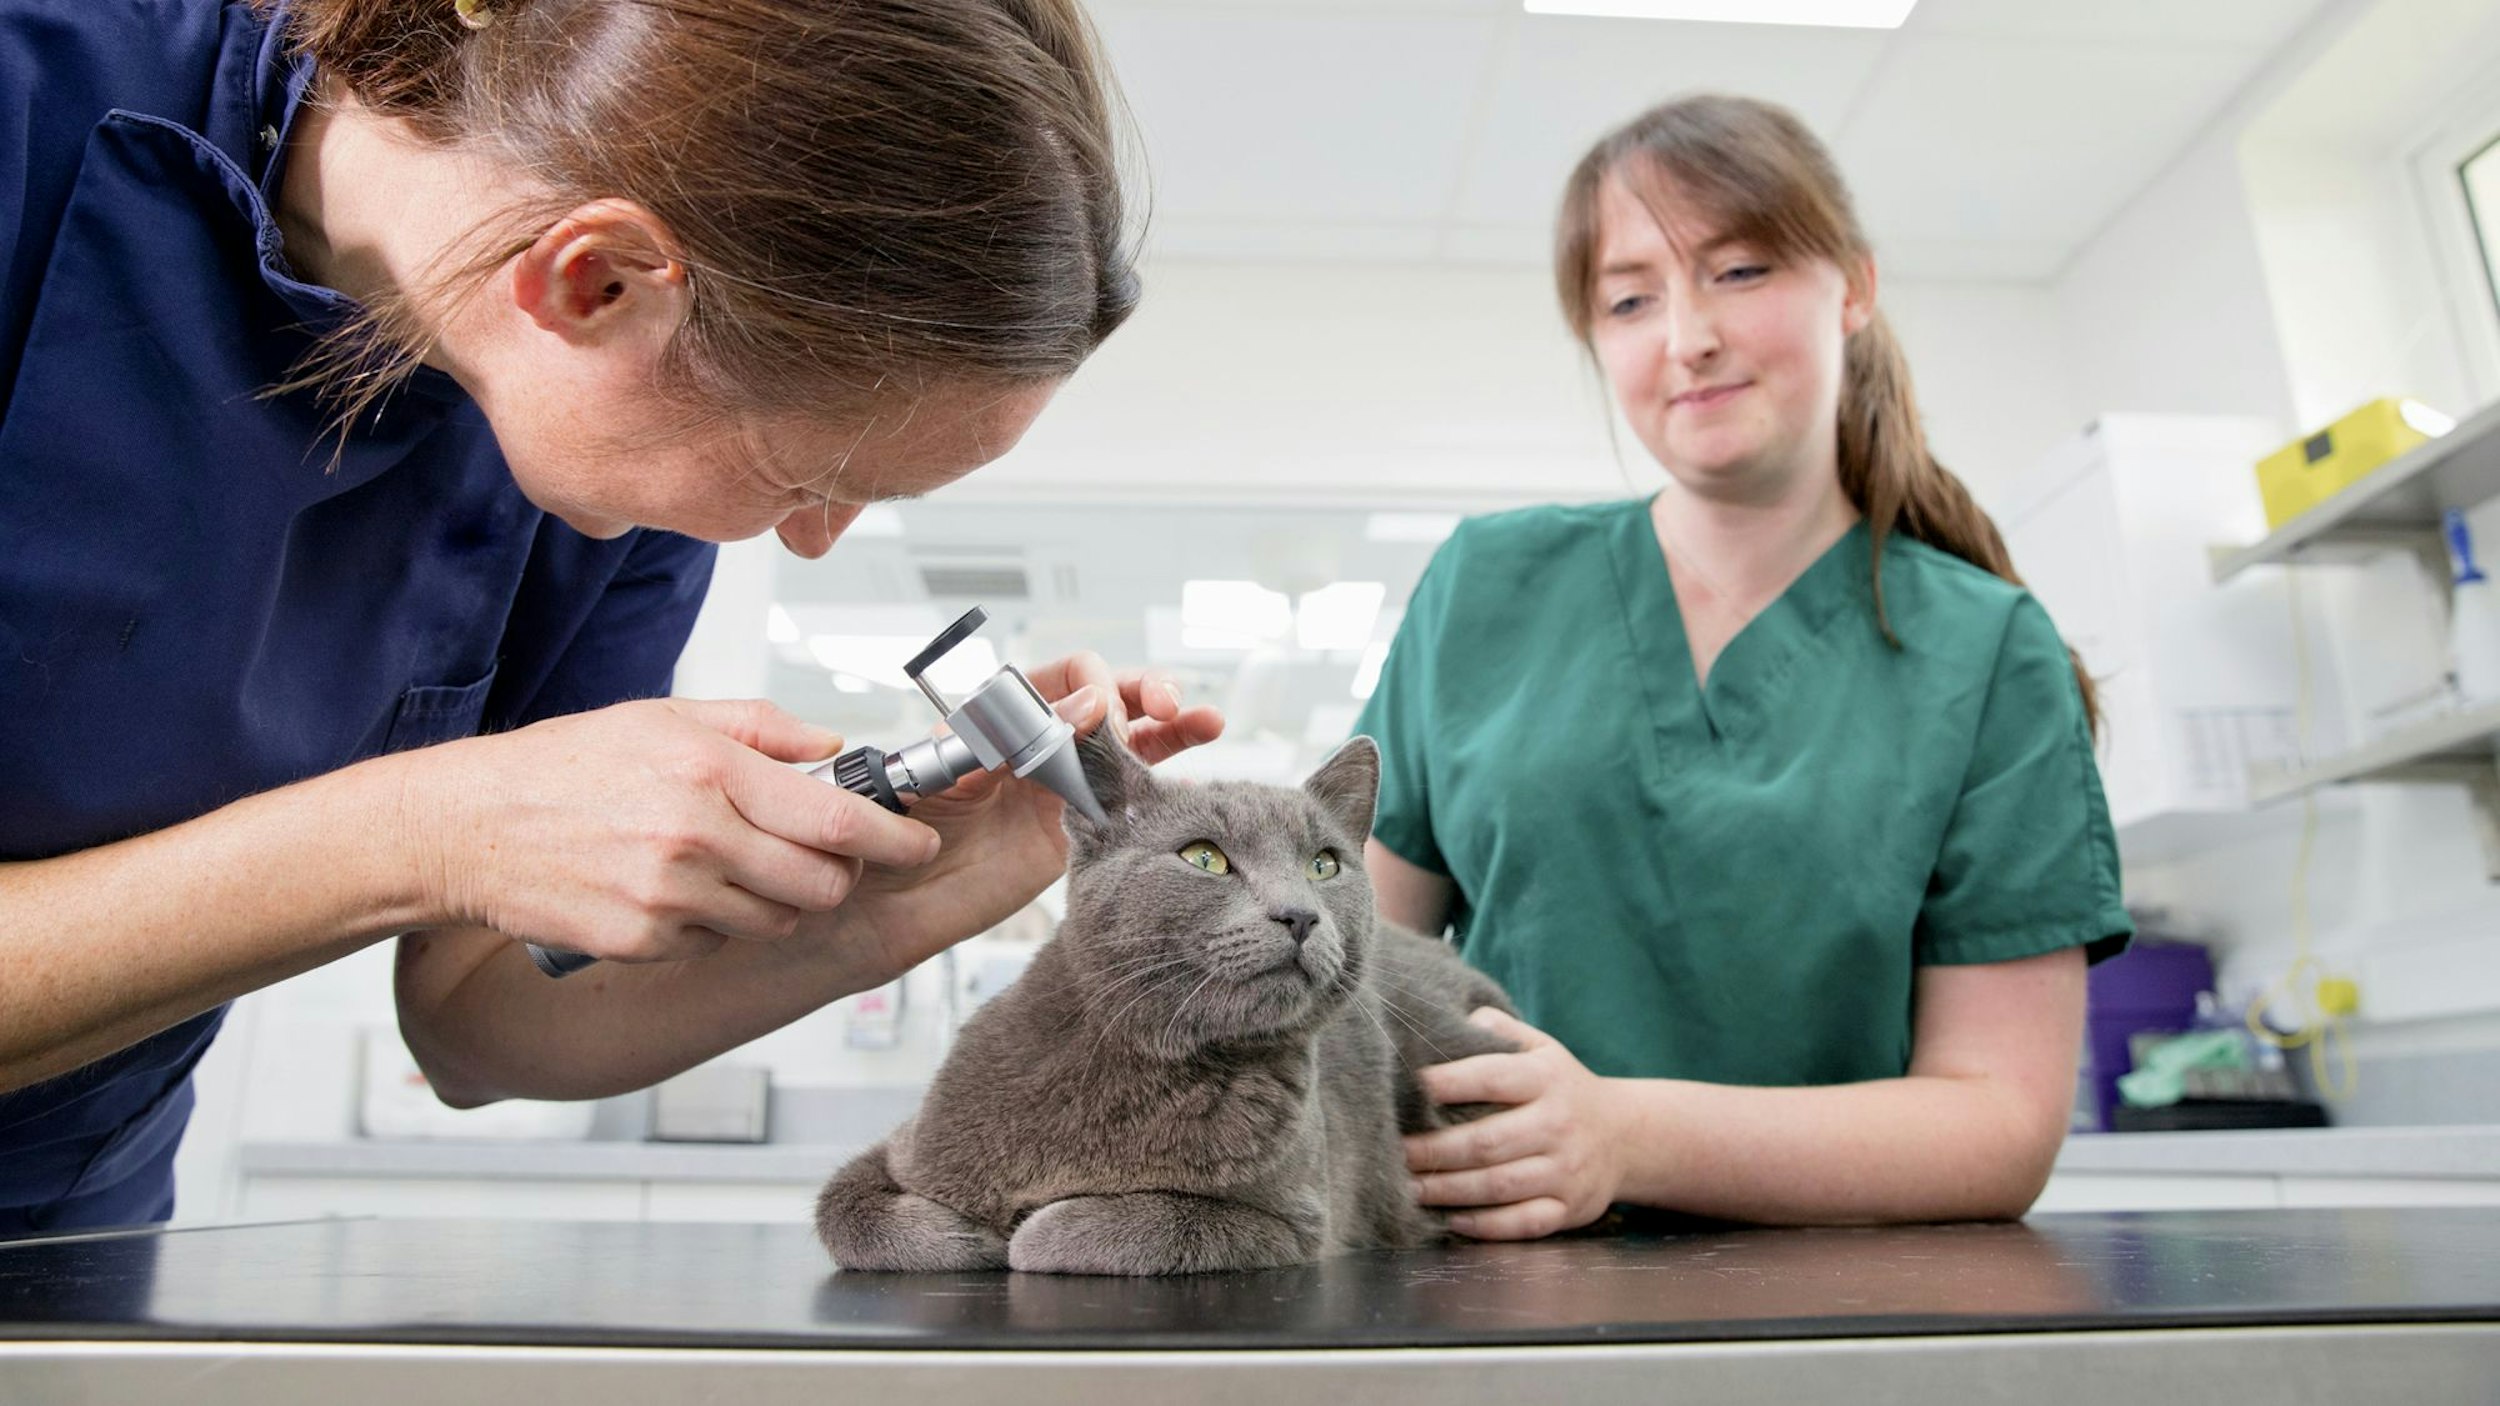 Vet and nurse examining a grey cats ear